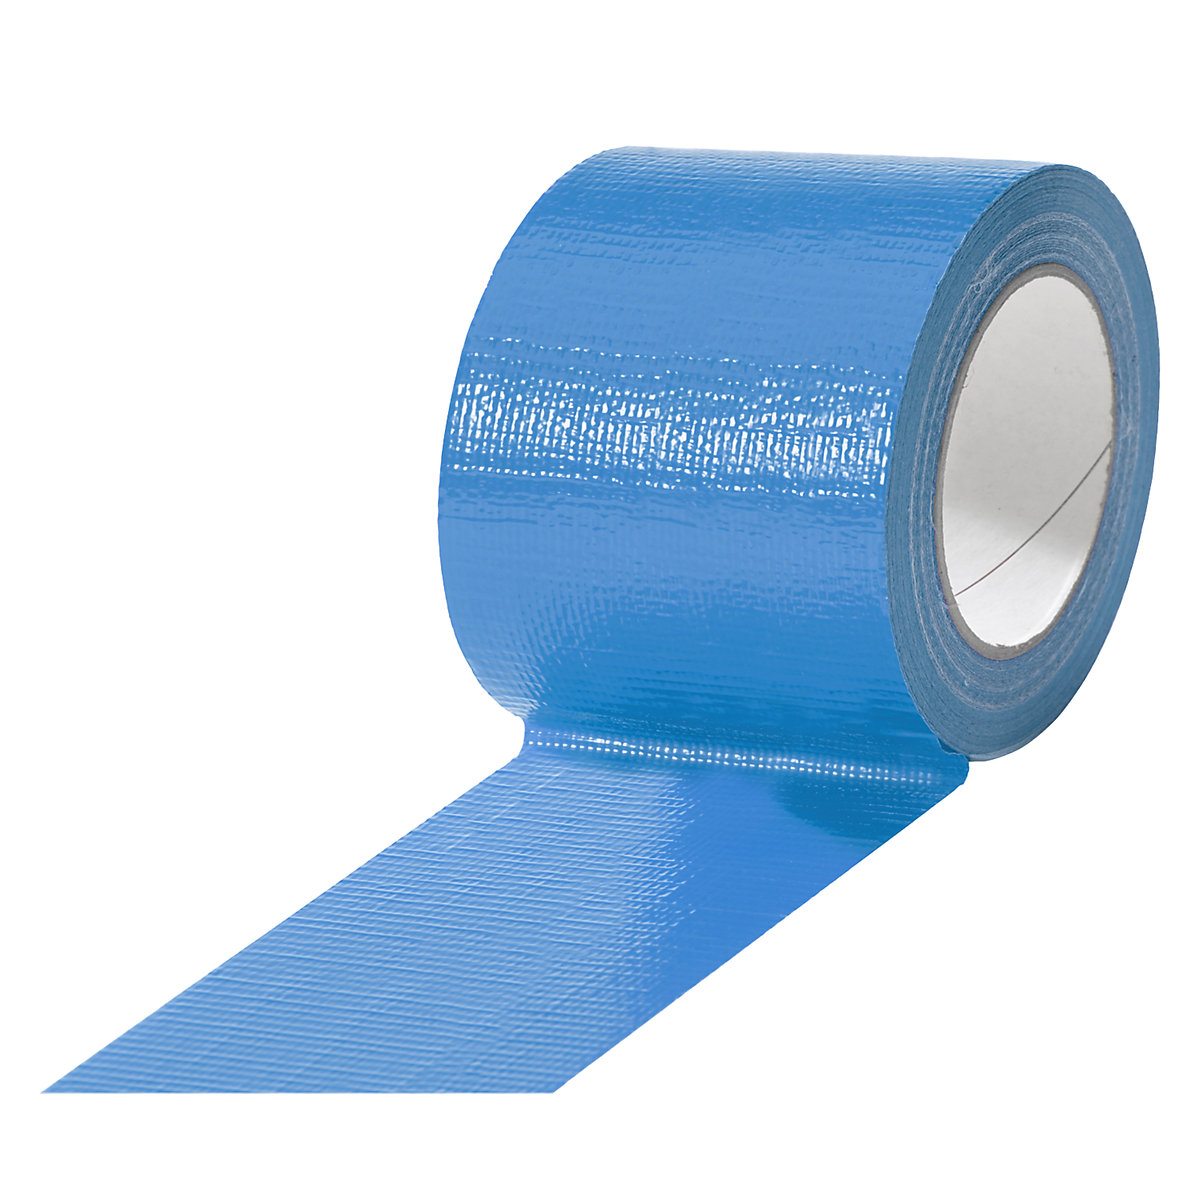 Gewebeband, in verschiedenen Farben, VE 12 Rollen, blau, Bandbreite 75 mm